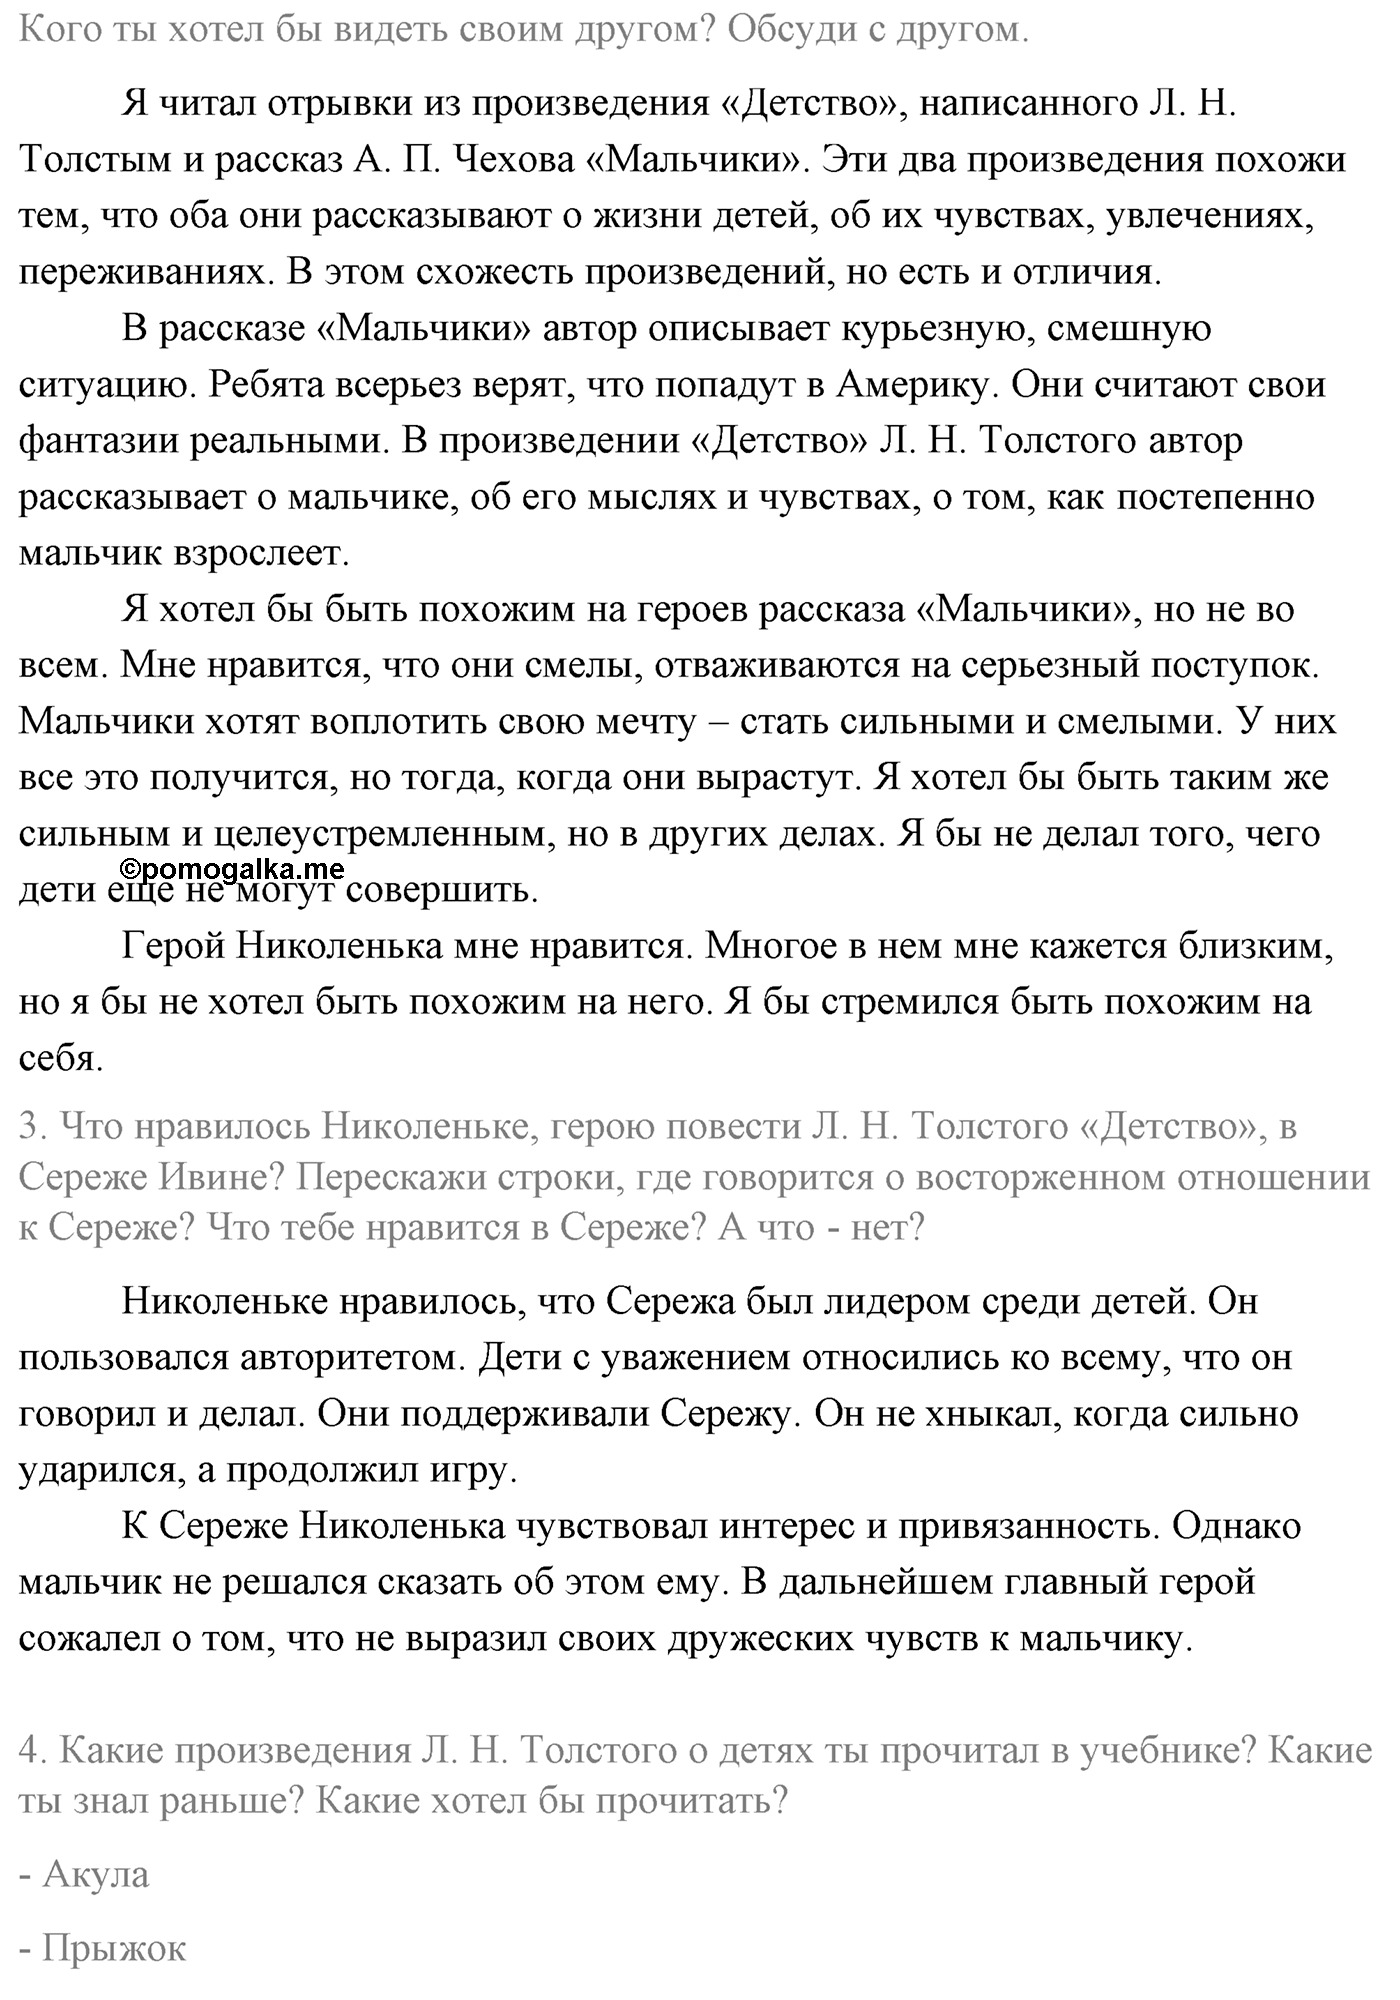 Часть 1 Страница 96 литературное чтение 4 класс Климанова, Горецкий, Голованова, Виноградская, Бойкина 2021 год